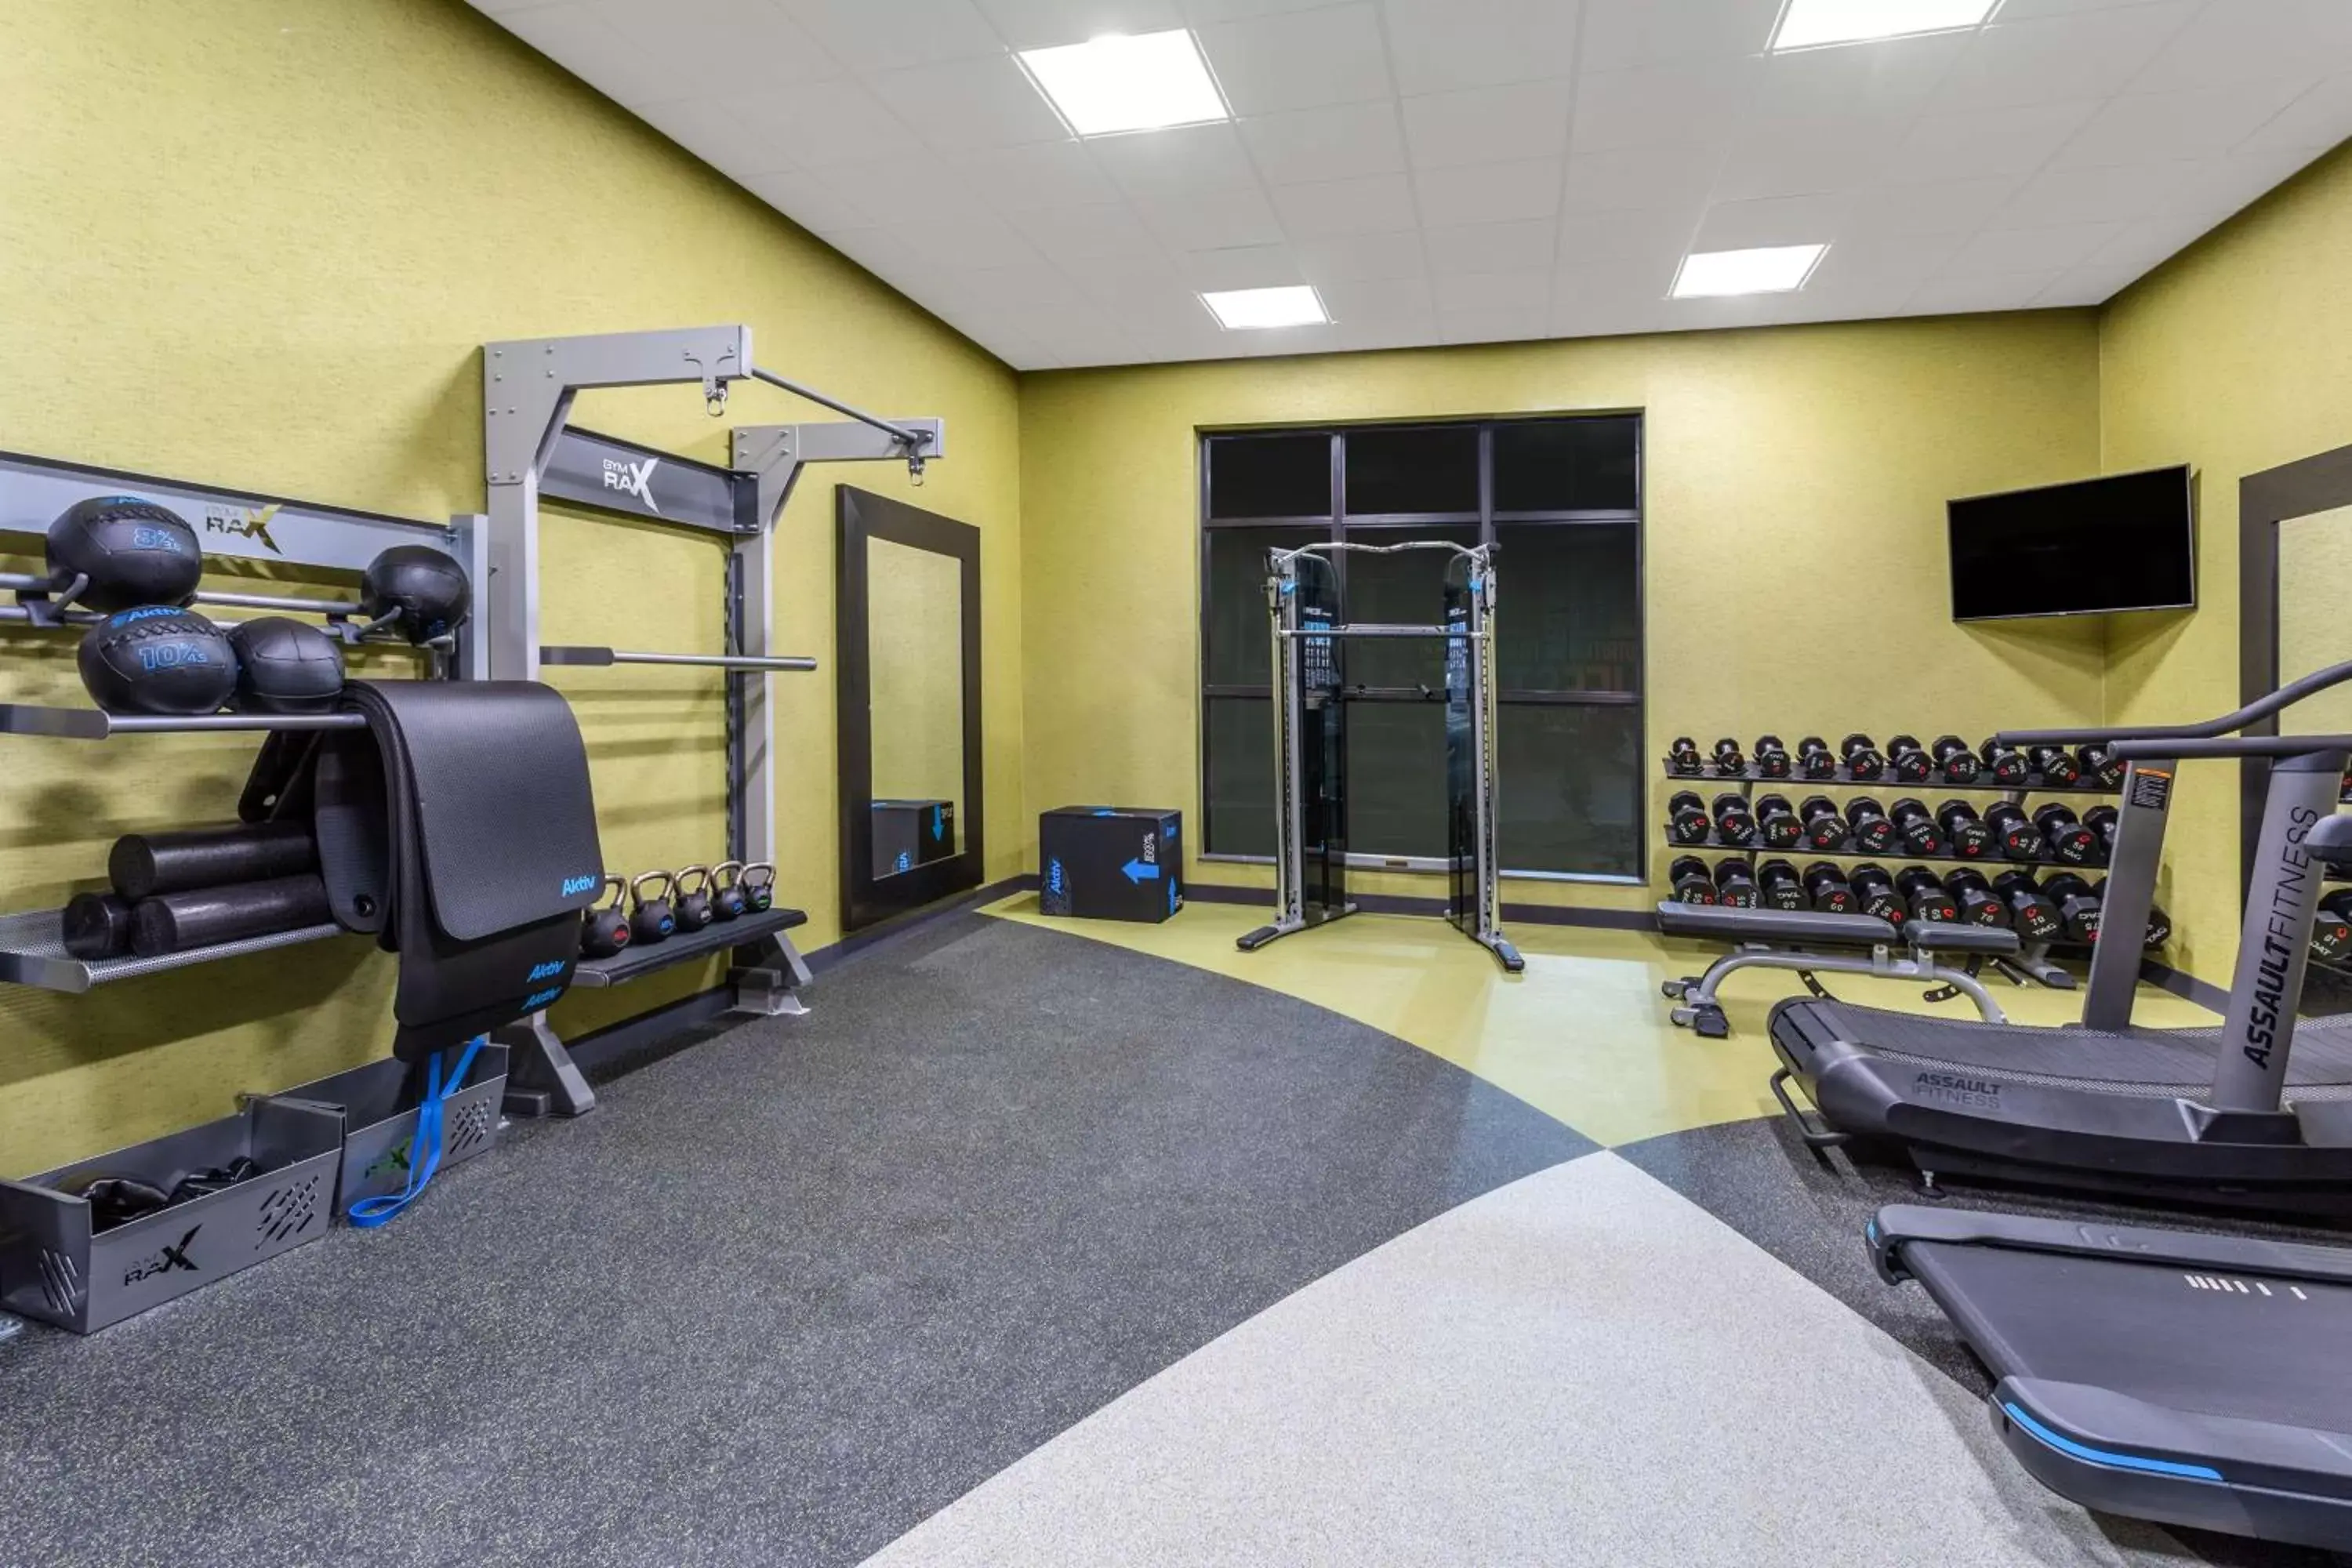 Fitness centre/facilities, Fitness Center/Facilities in Hilton Garden Inn Hays, KS